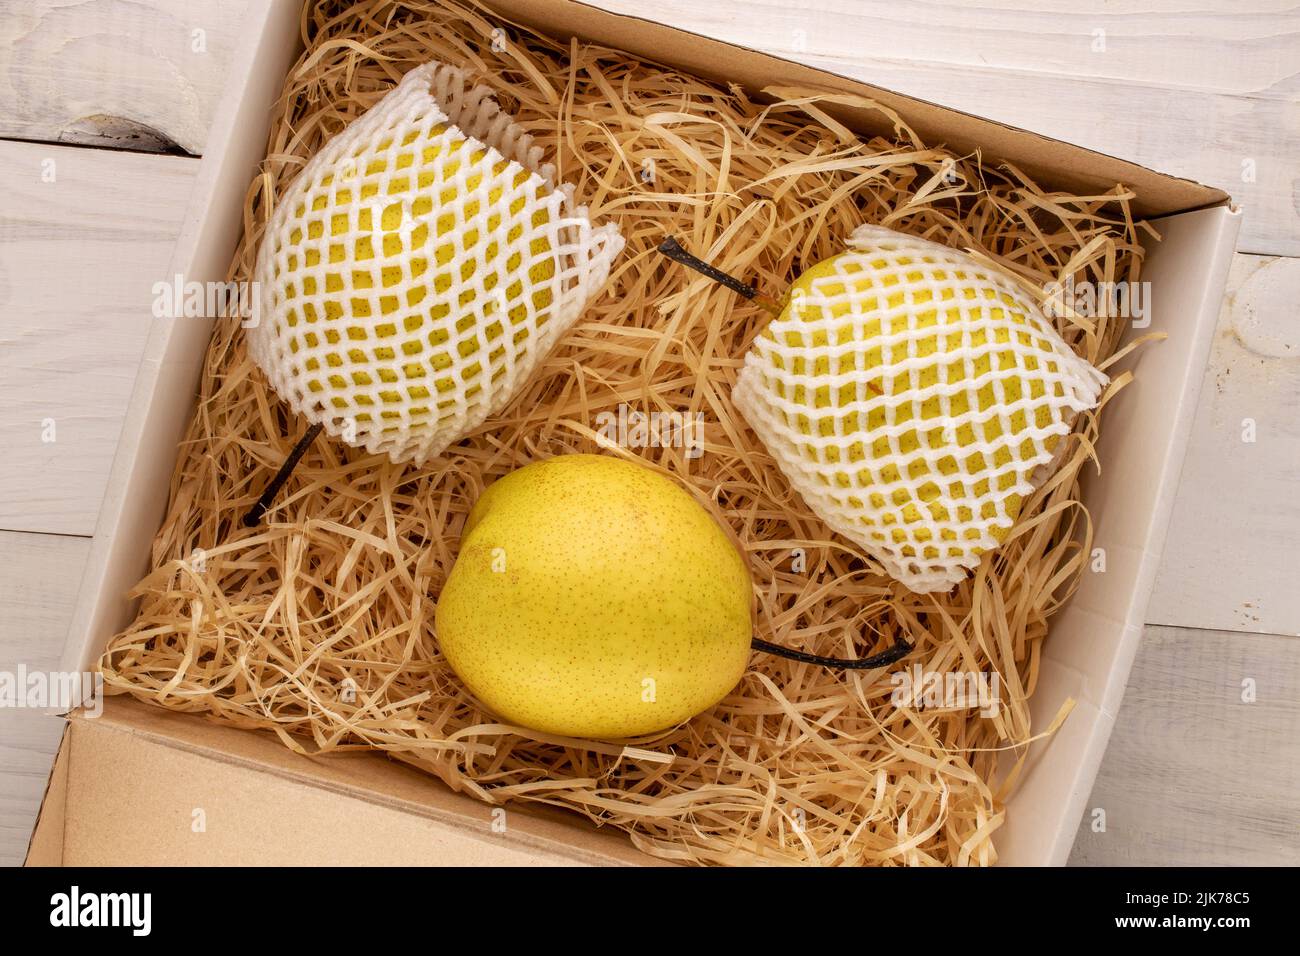 Trois poires jaunes douces dans une boîte avec copeaux de bois sur une table en bois, vue rapprochée du dessus. Banque D'Images